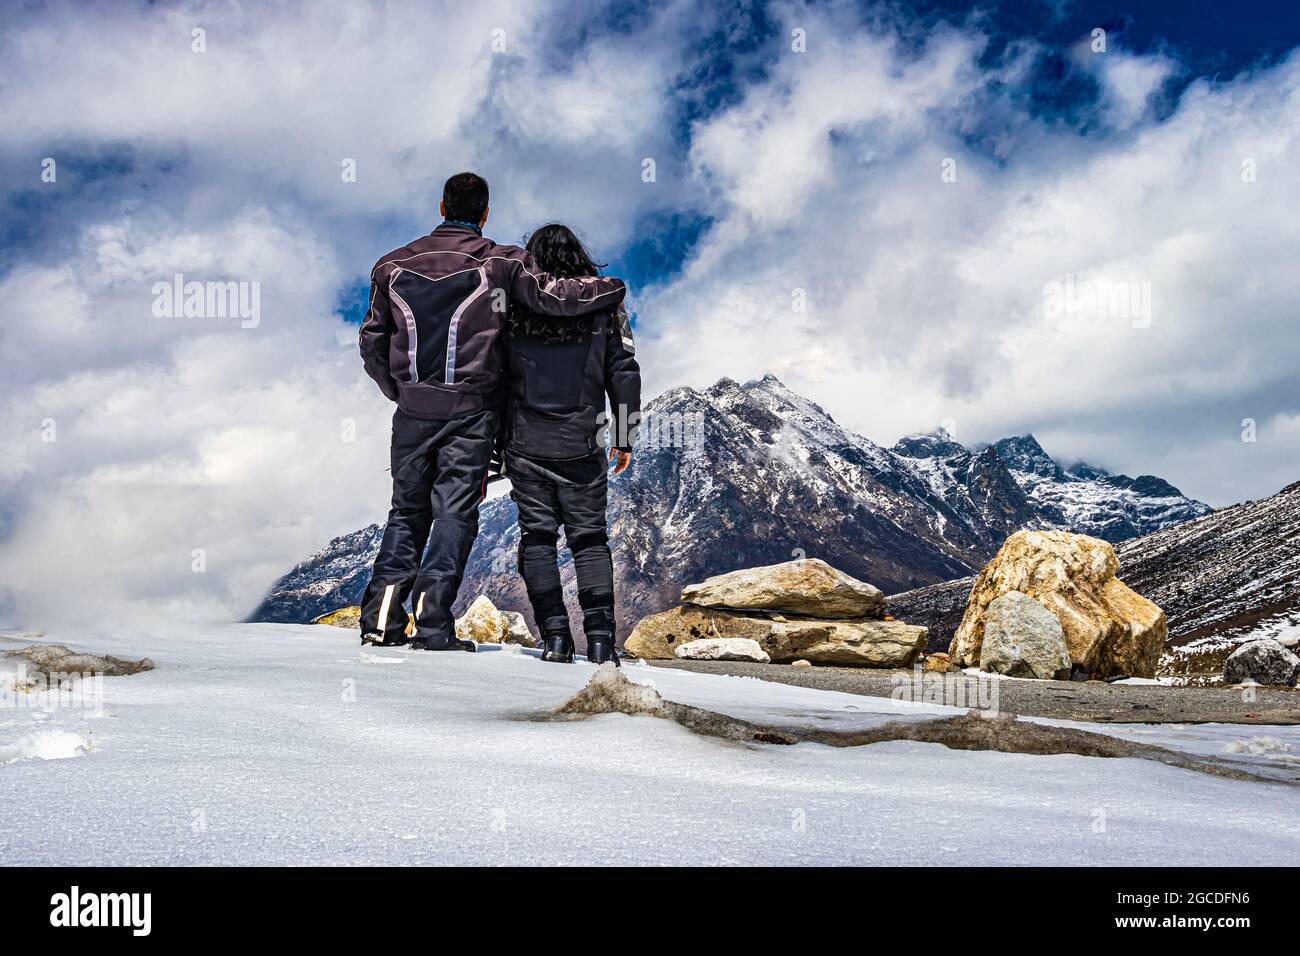 Isoliertes junges Paar, das auf der Bergspitze und am Tag am dramatischen Himmel steht, wird am sela-Pass tawang arunachal pradesh india aufgenommen. Stockfoto